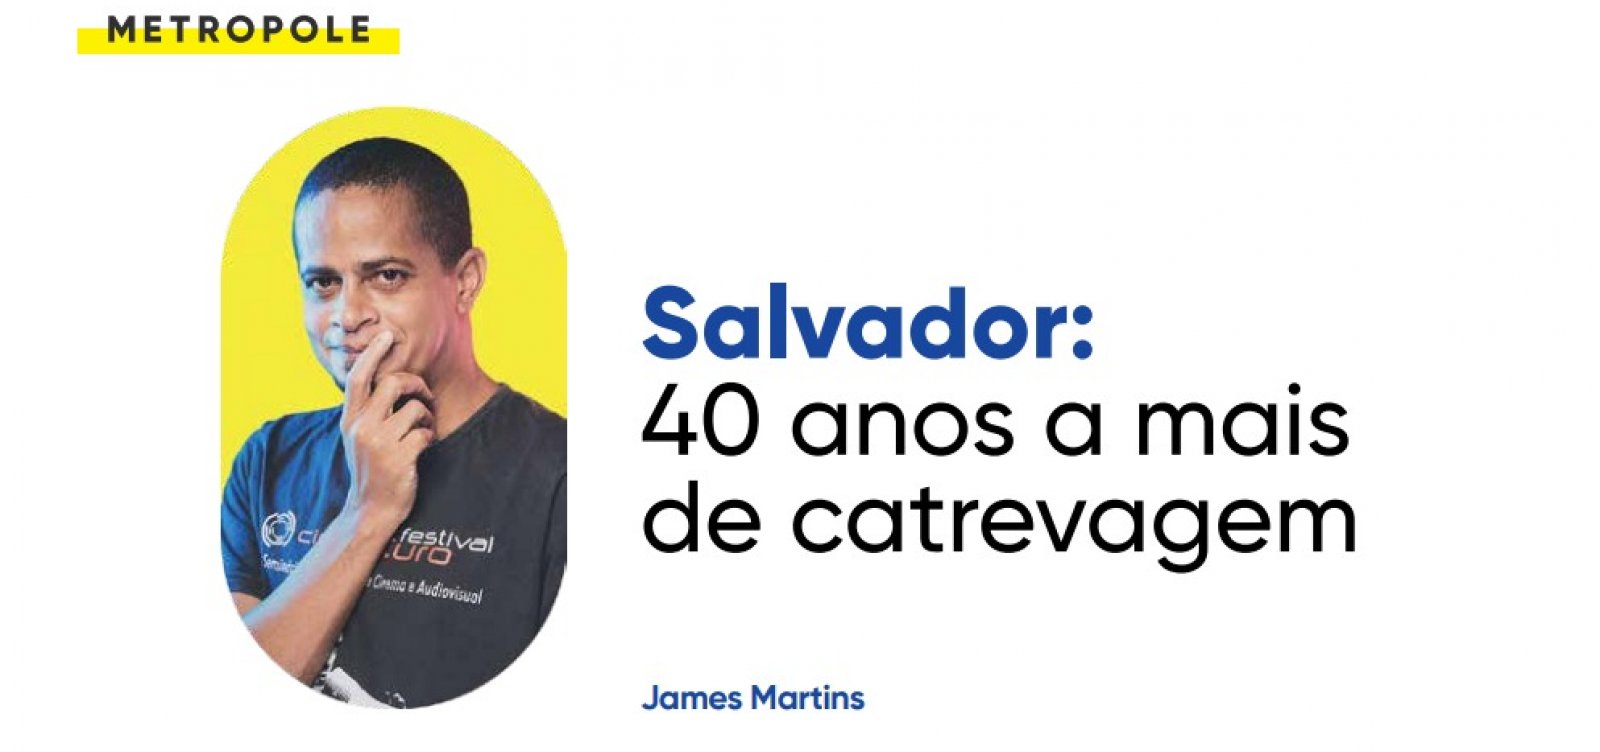 Salvador: 40 anos a mais de catrevagem